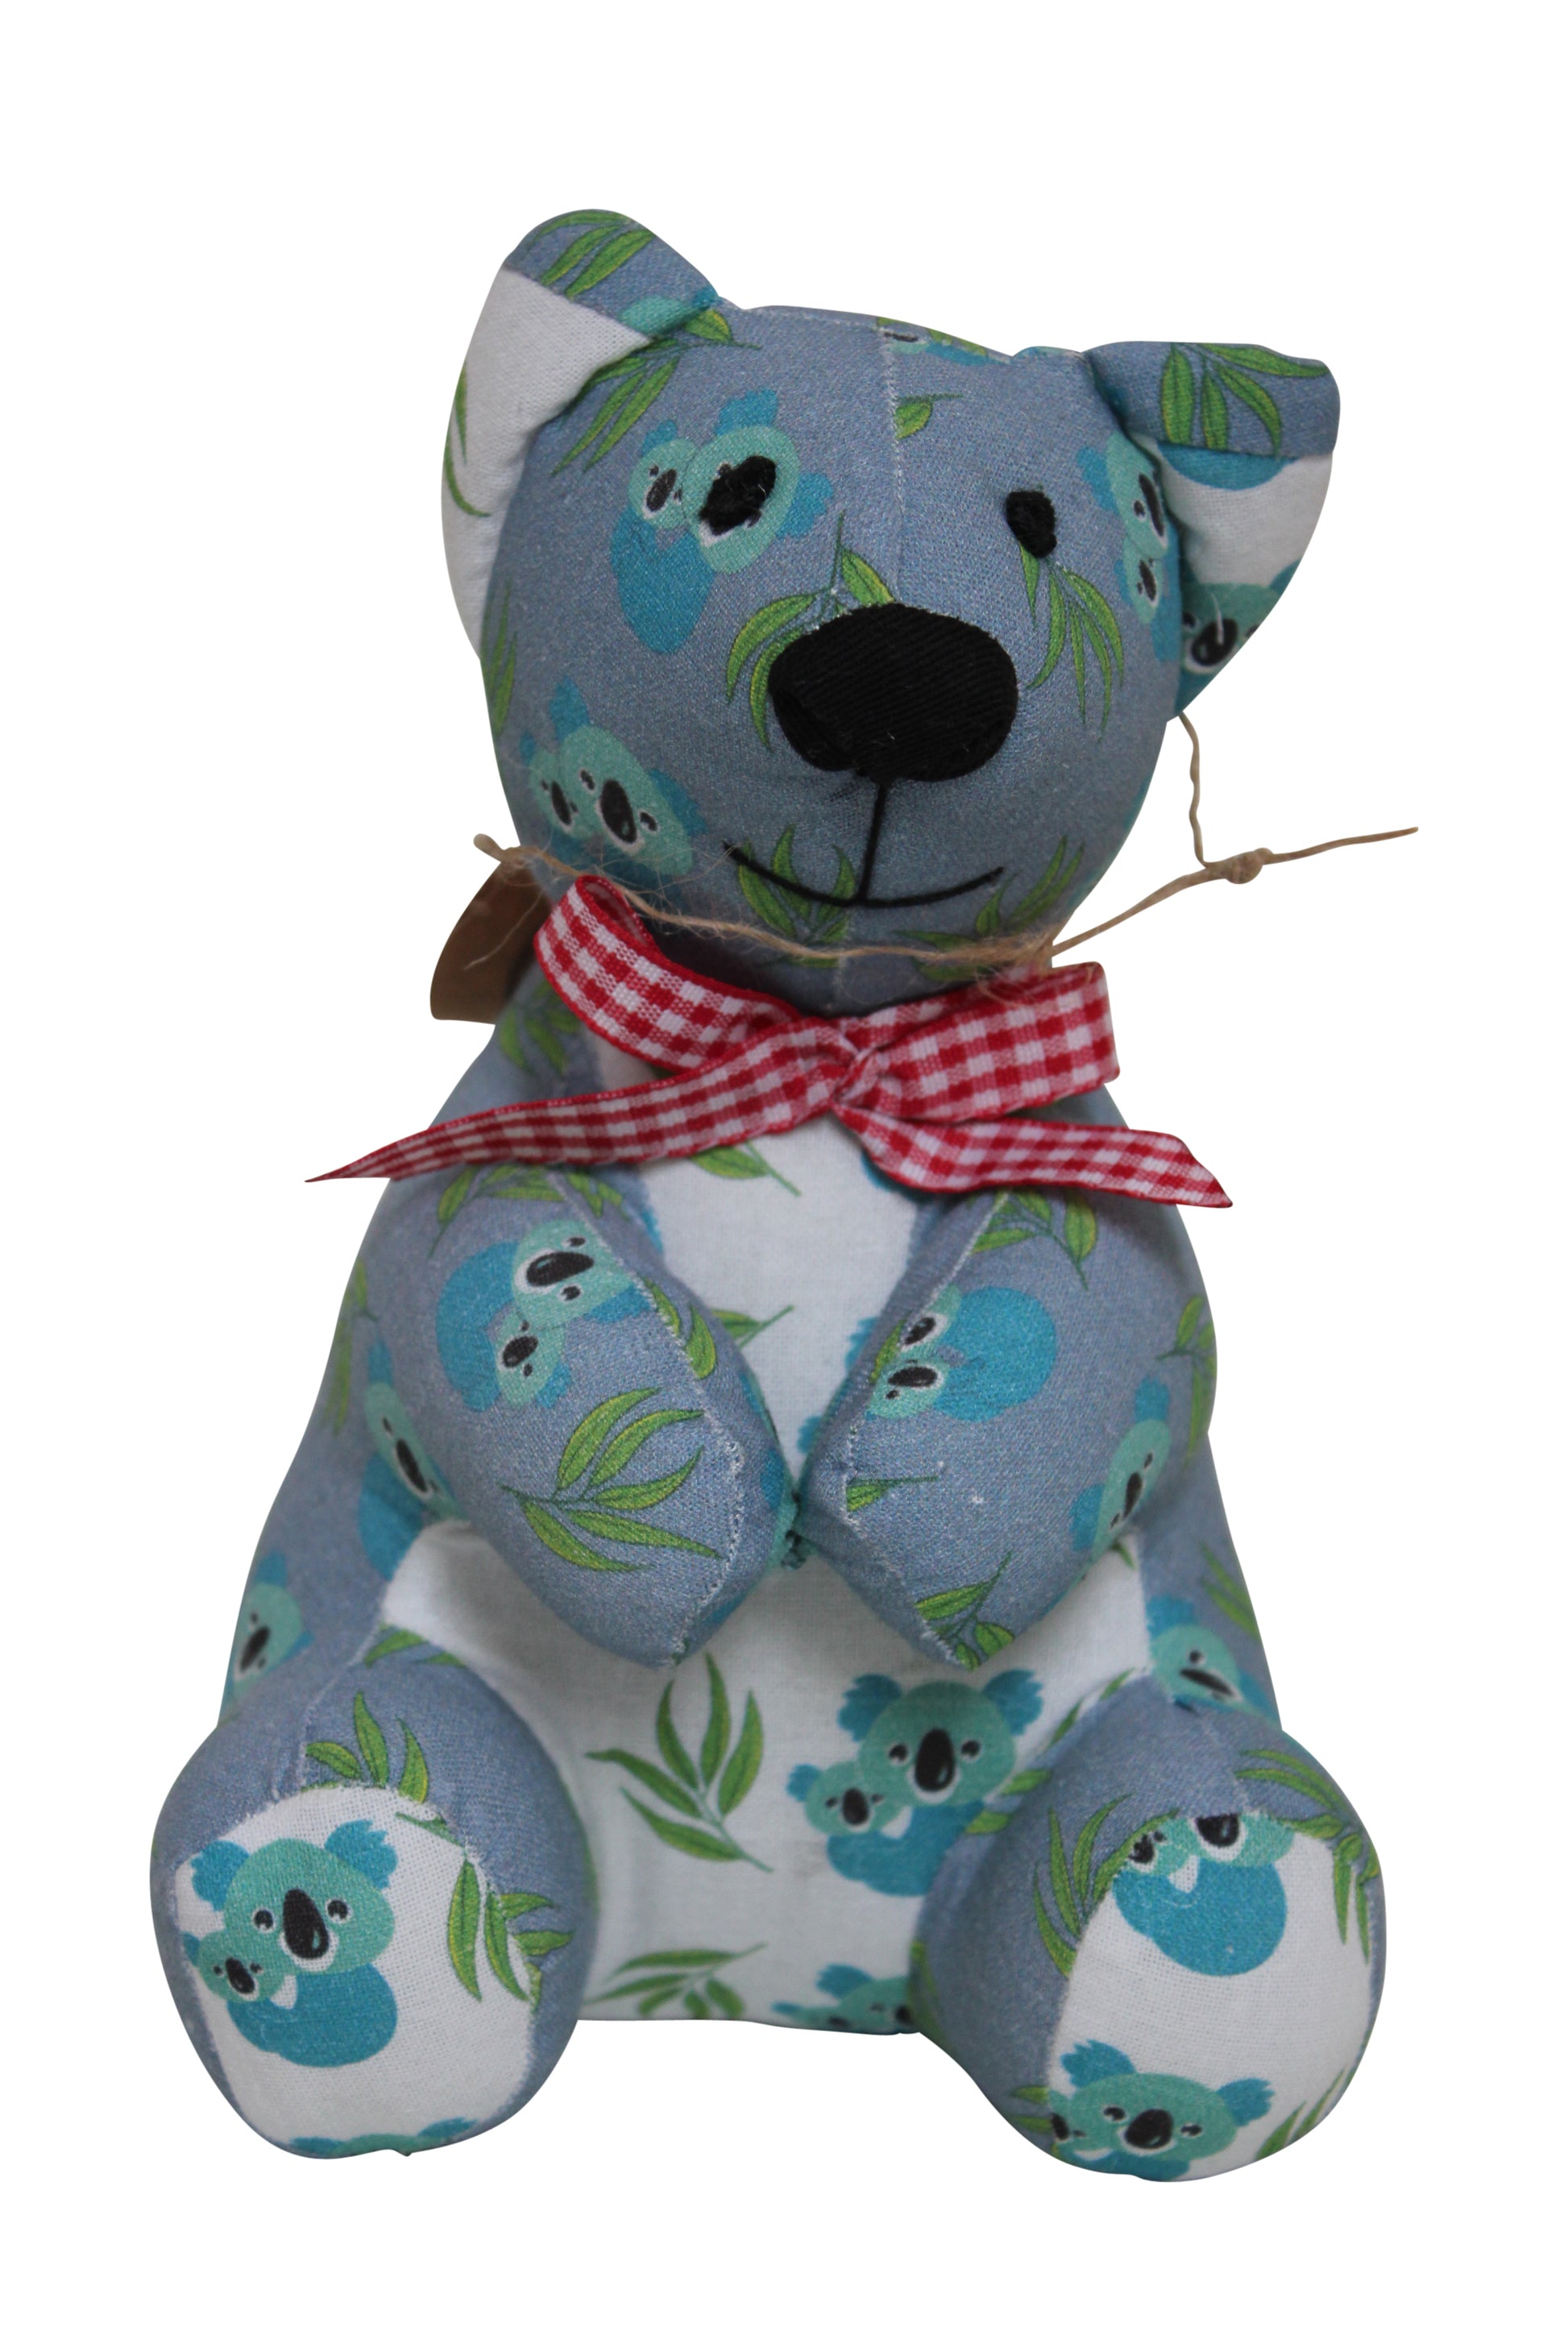 deidaa organic cotton stuffed koala toy australian gift souvenir